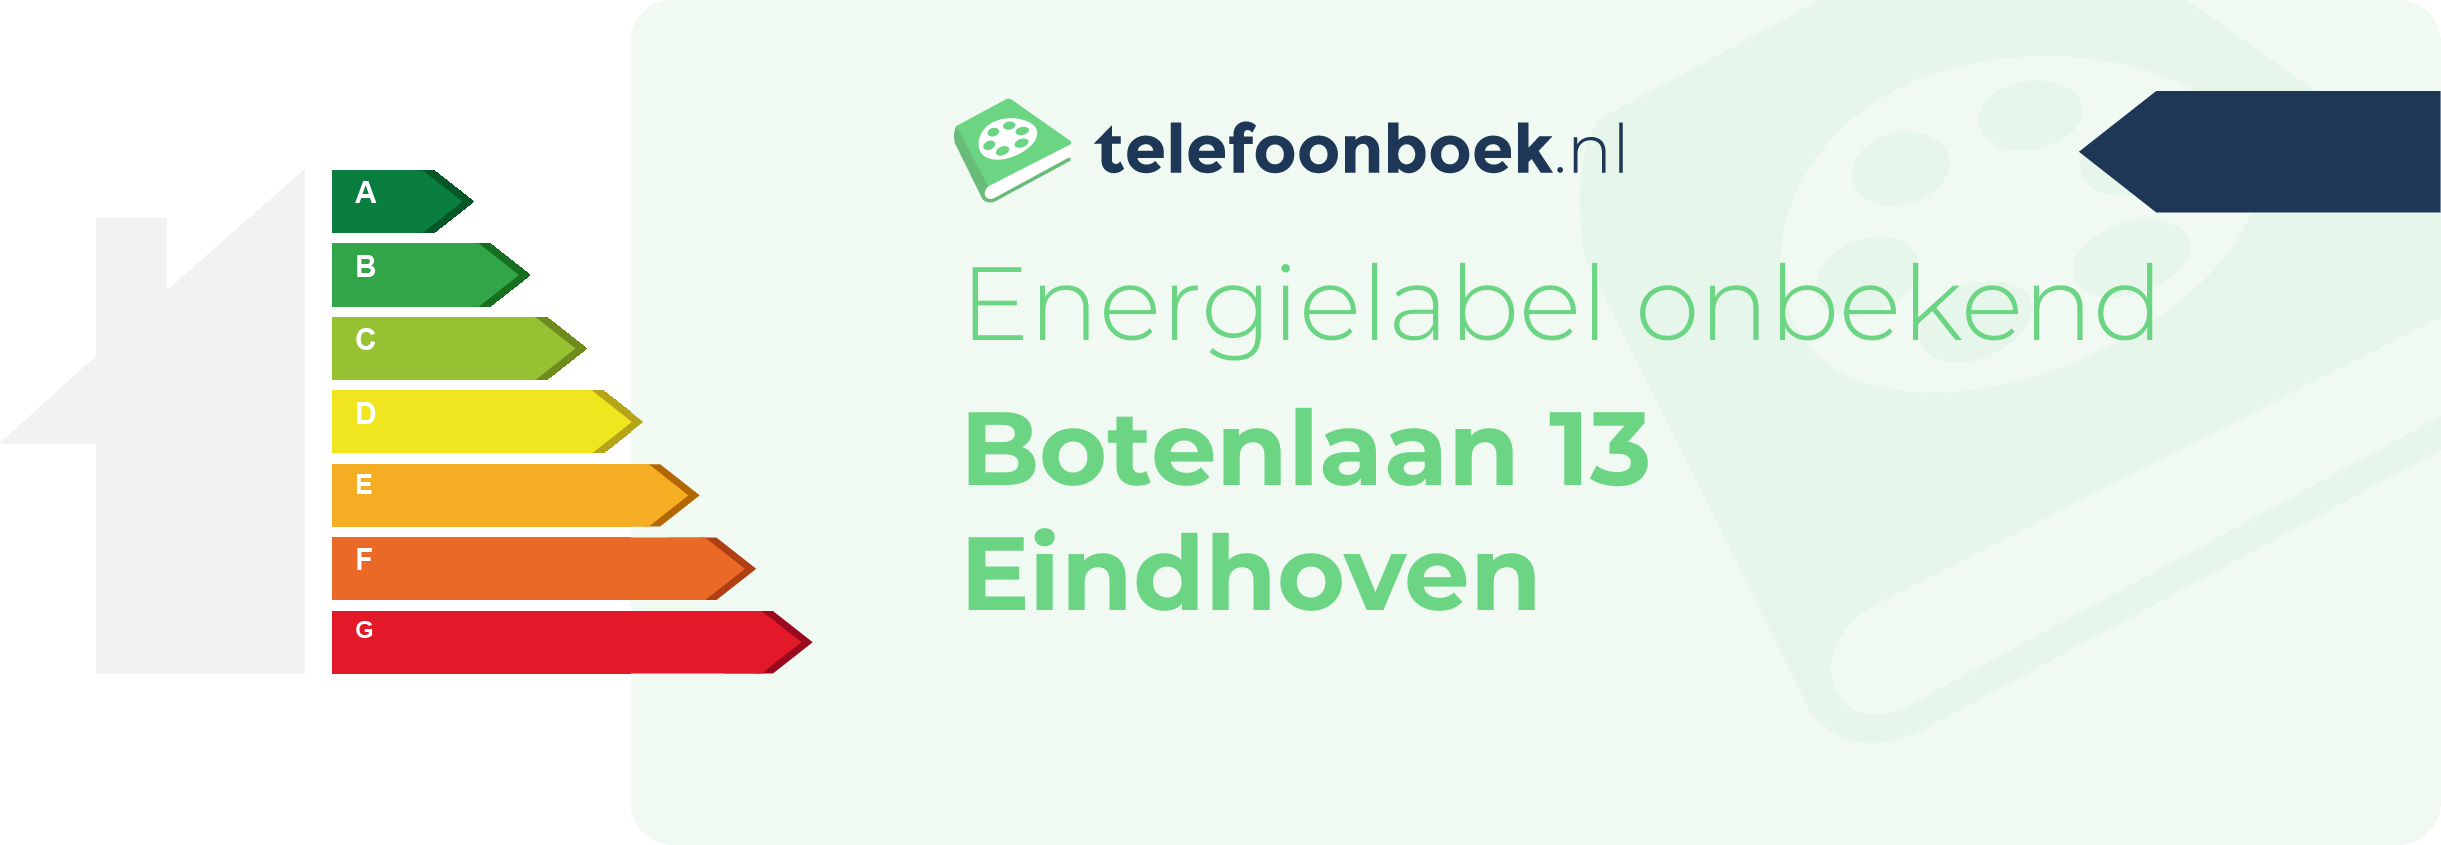 Energielabel Botenlaan 13 Eindhoven